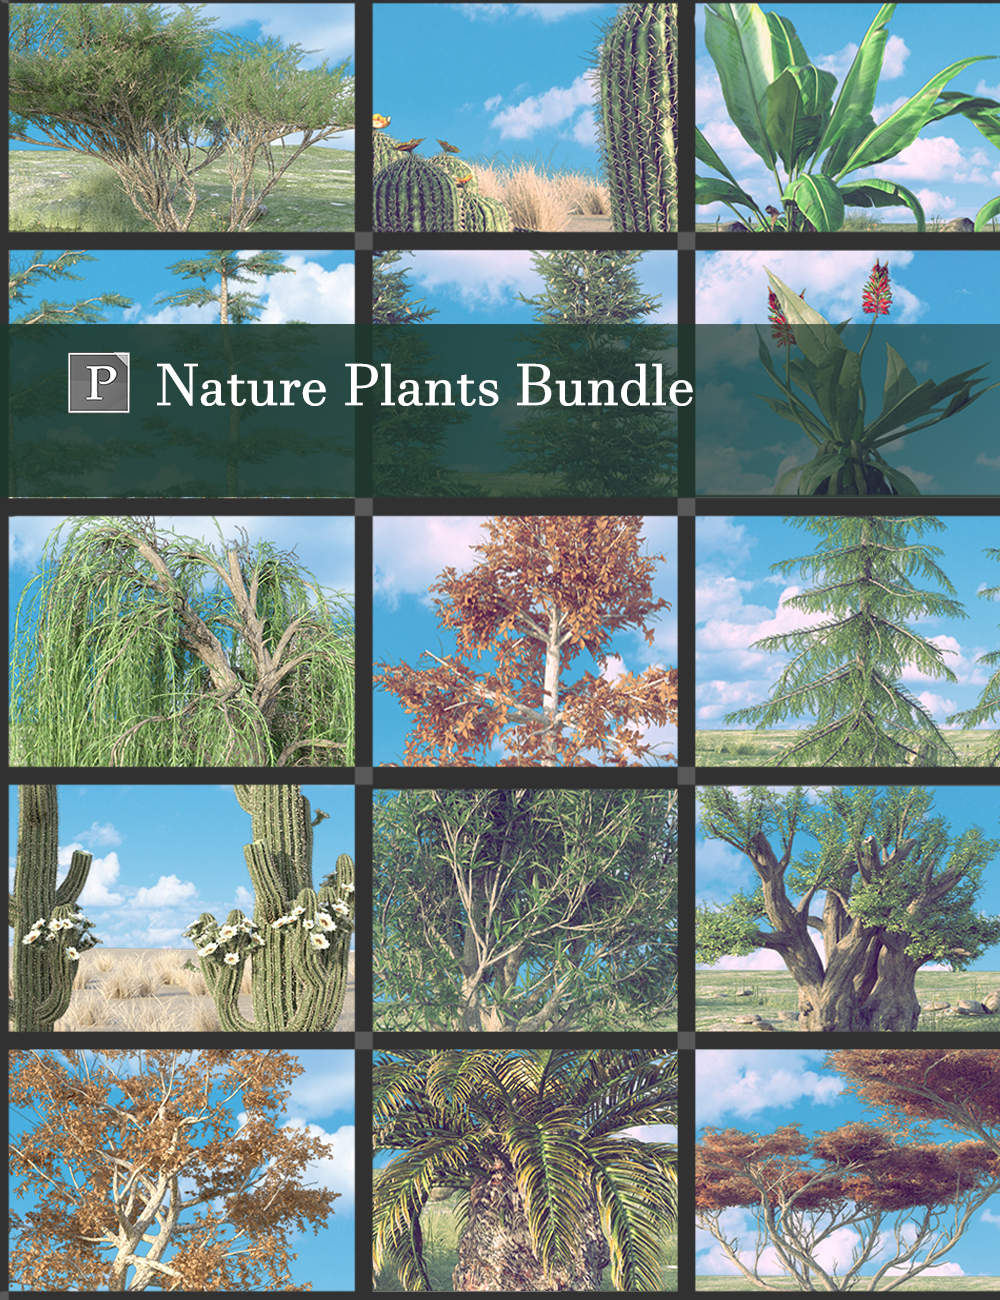 Nature Plants Bundle by: Polish, 3D Models by Daz 3D